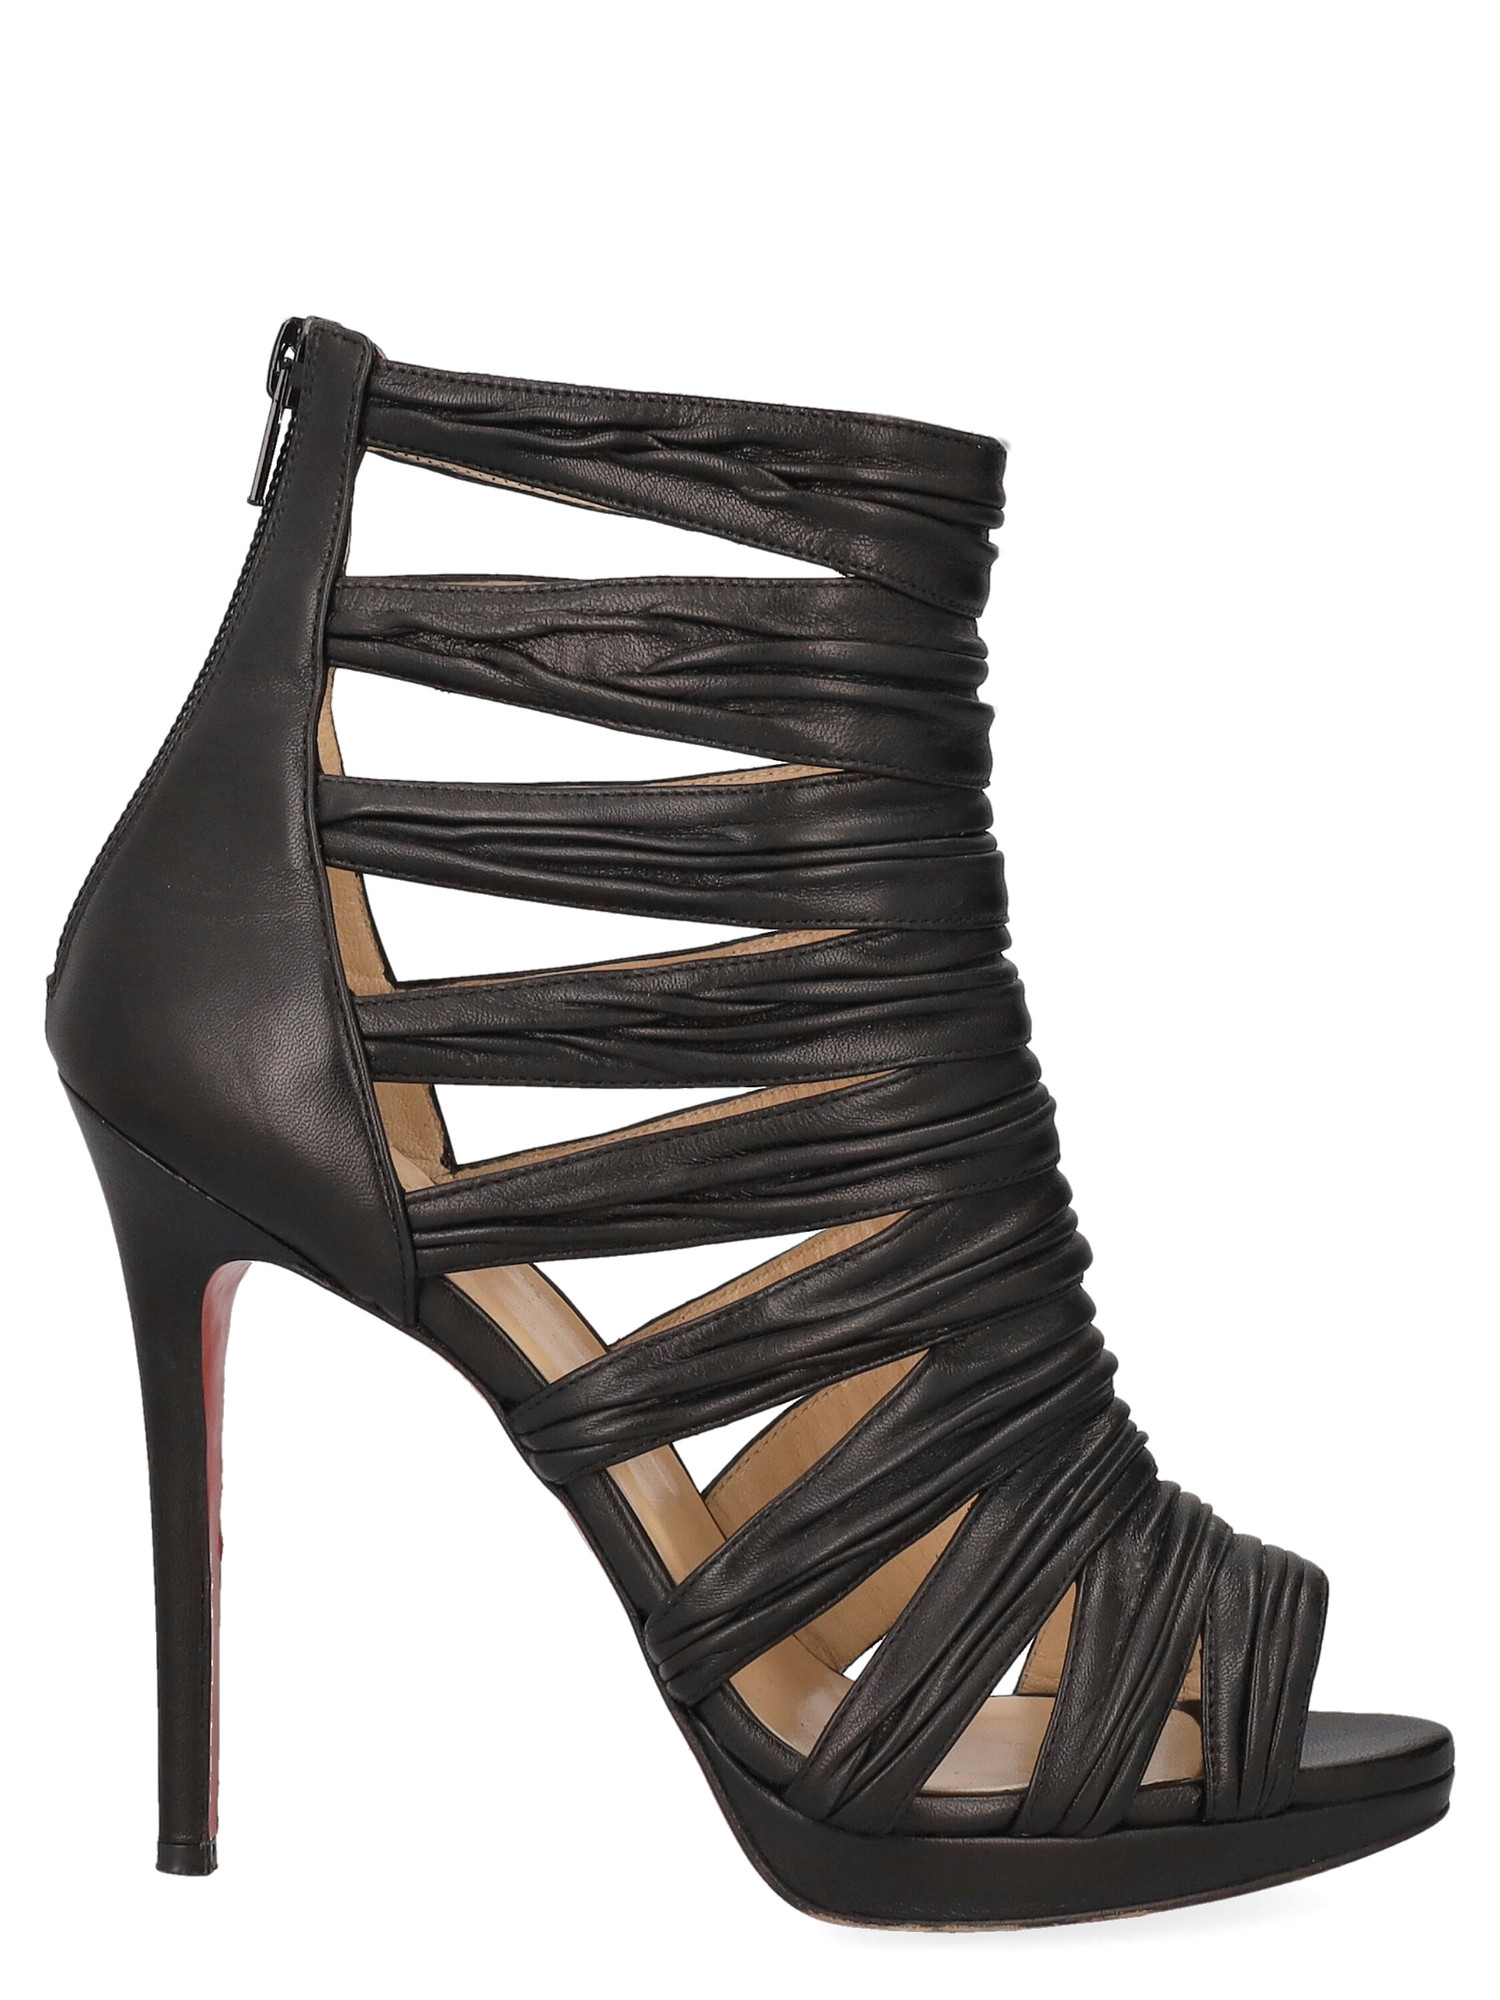 Sandales Pour Femme - Christian Louboutin - En Leather Black - Taille: IT 38.5 - EU 38.5